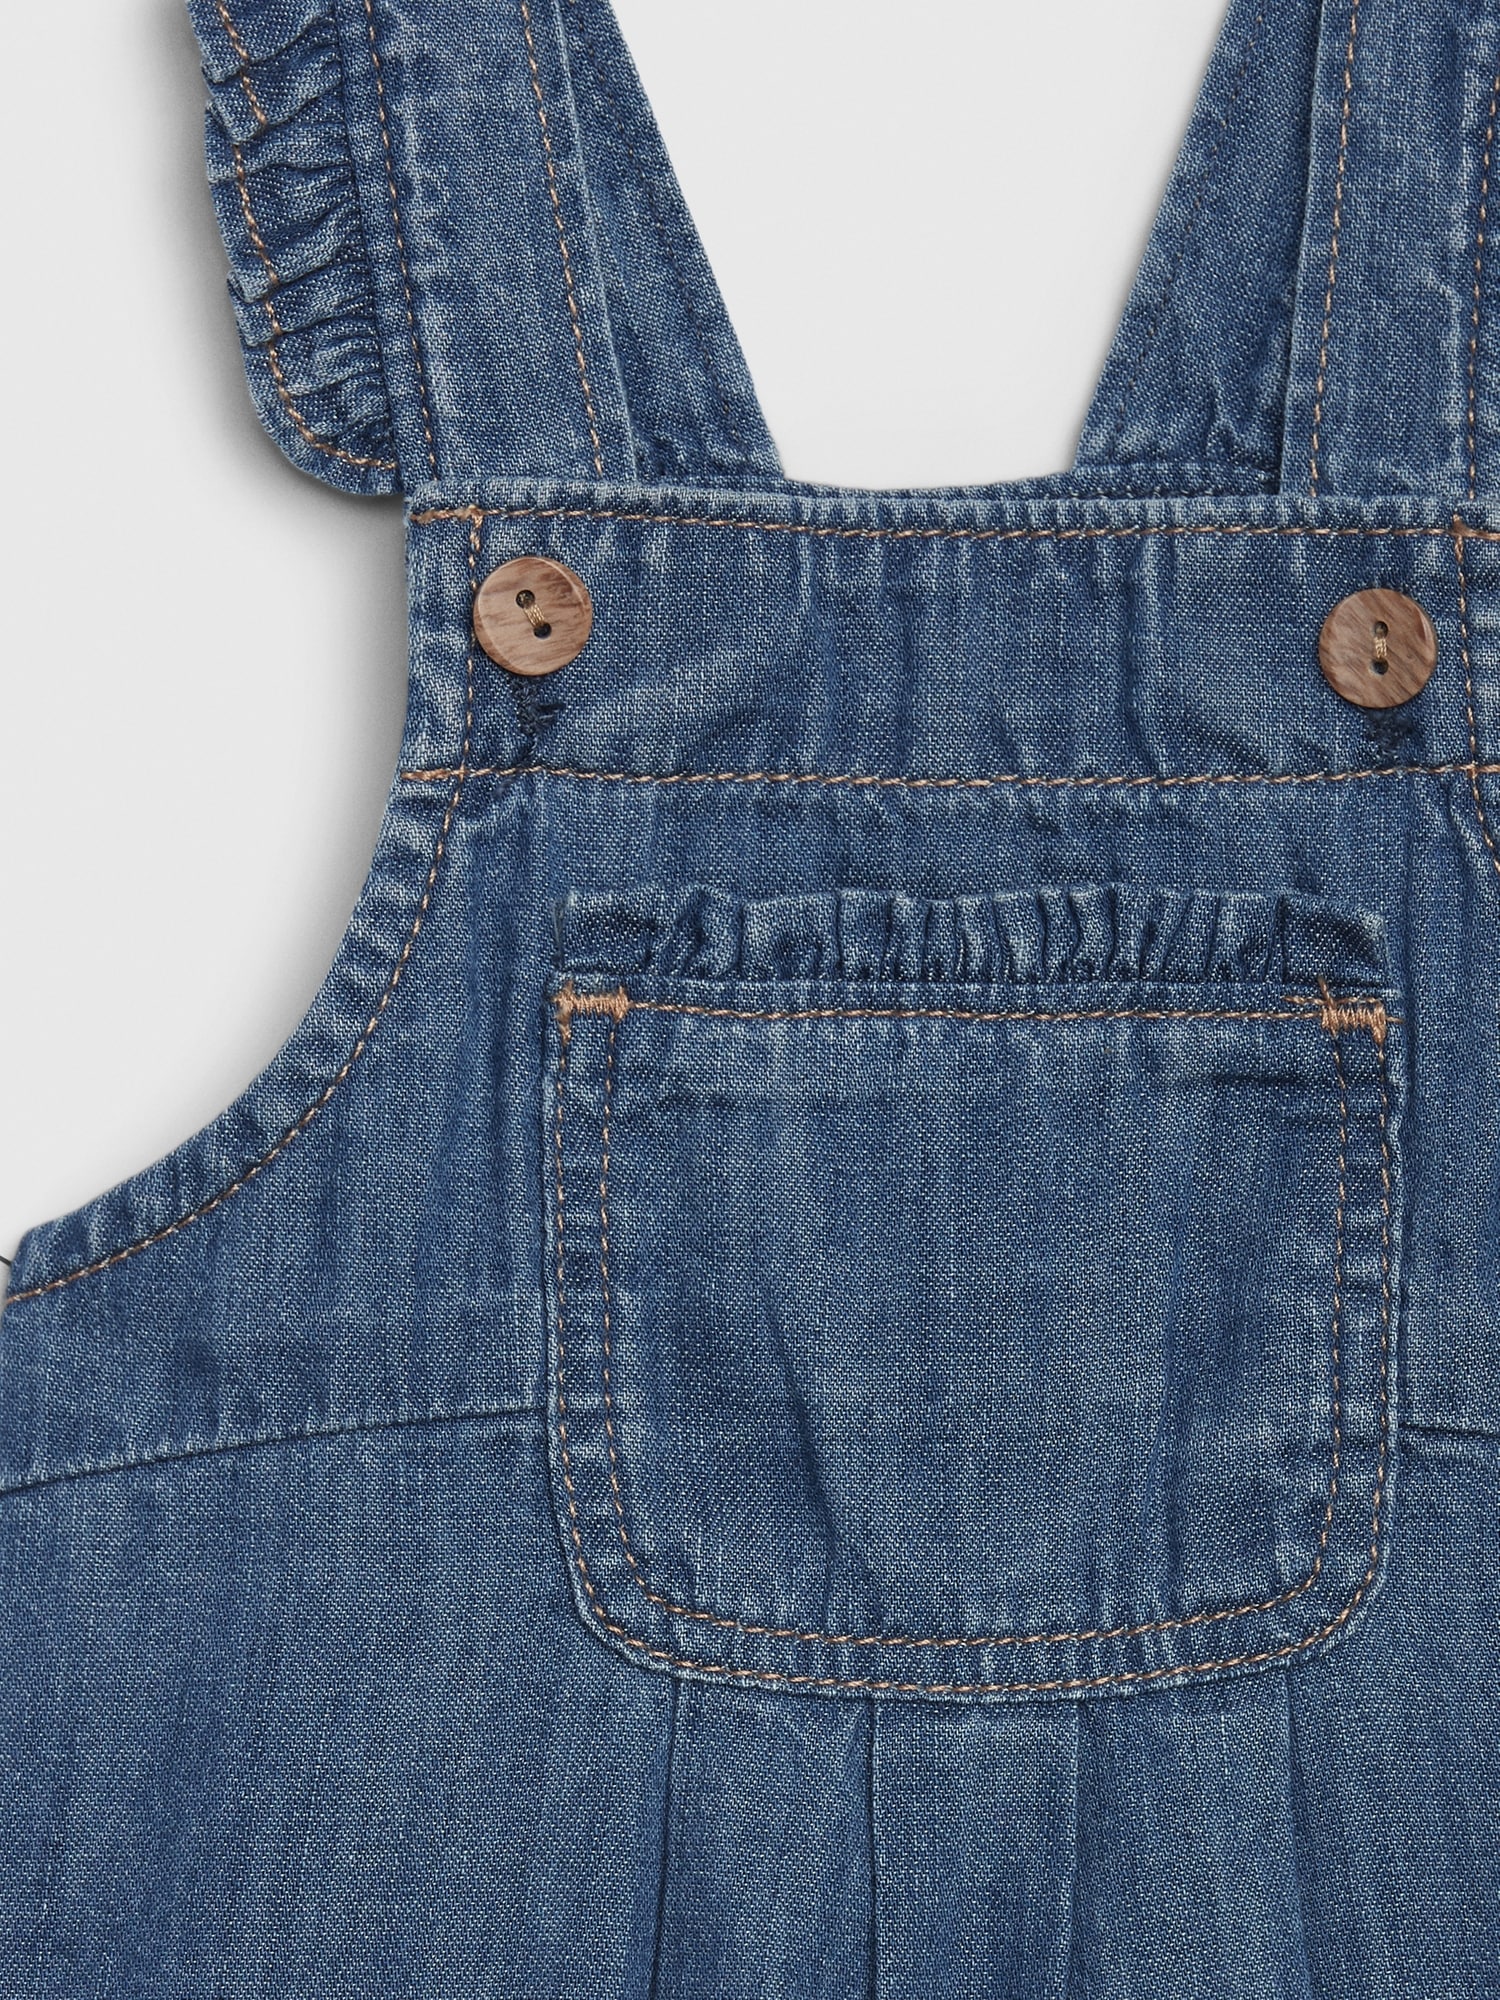 baby gap denim overalls